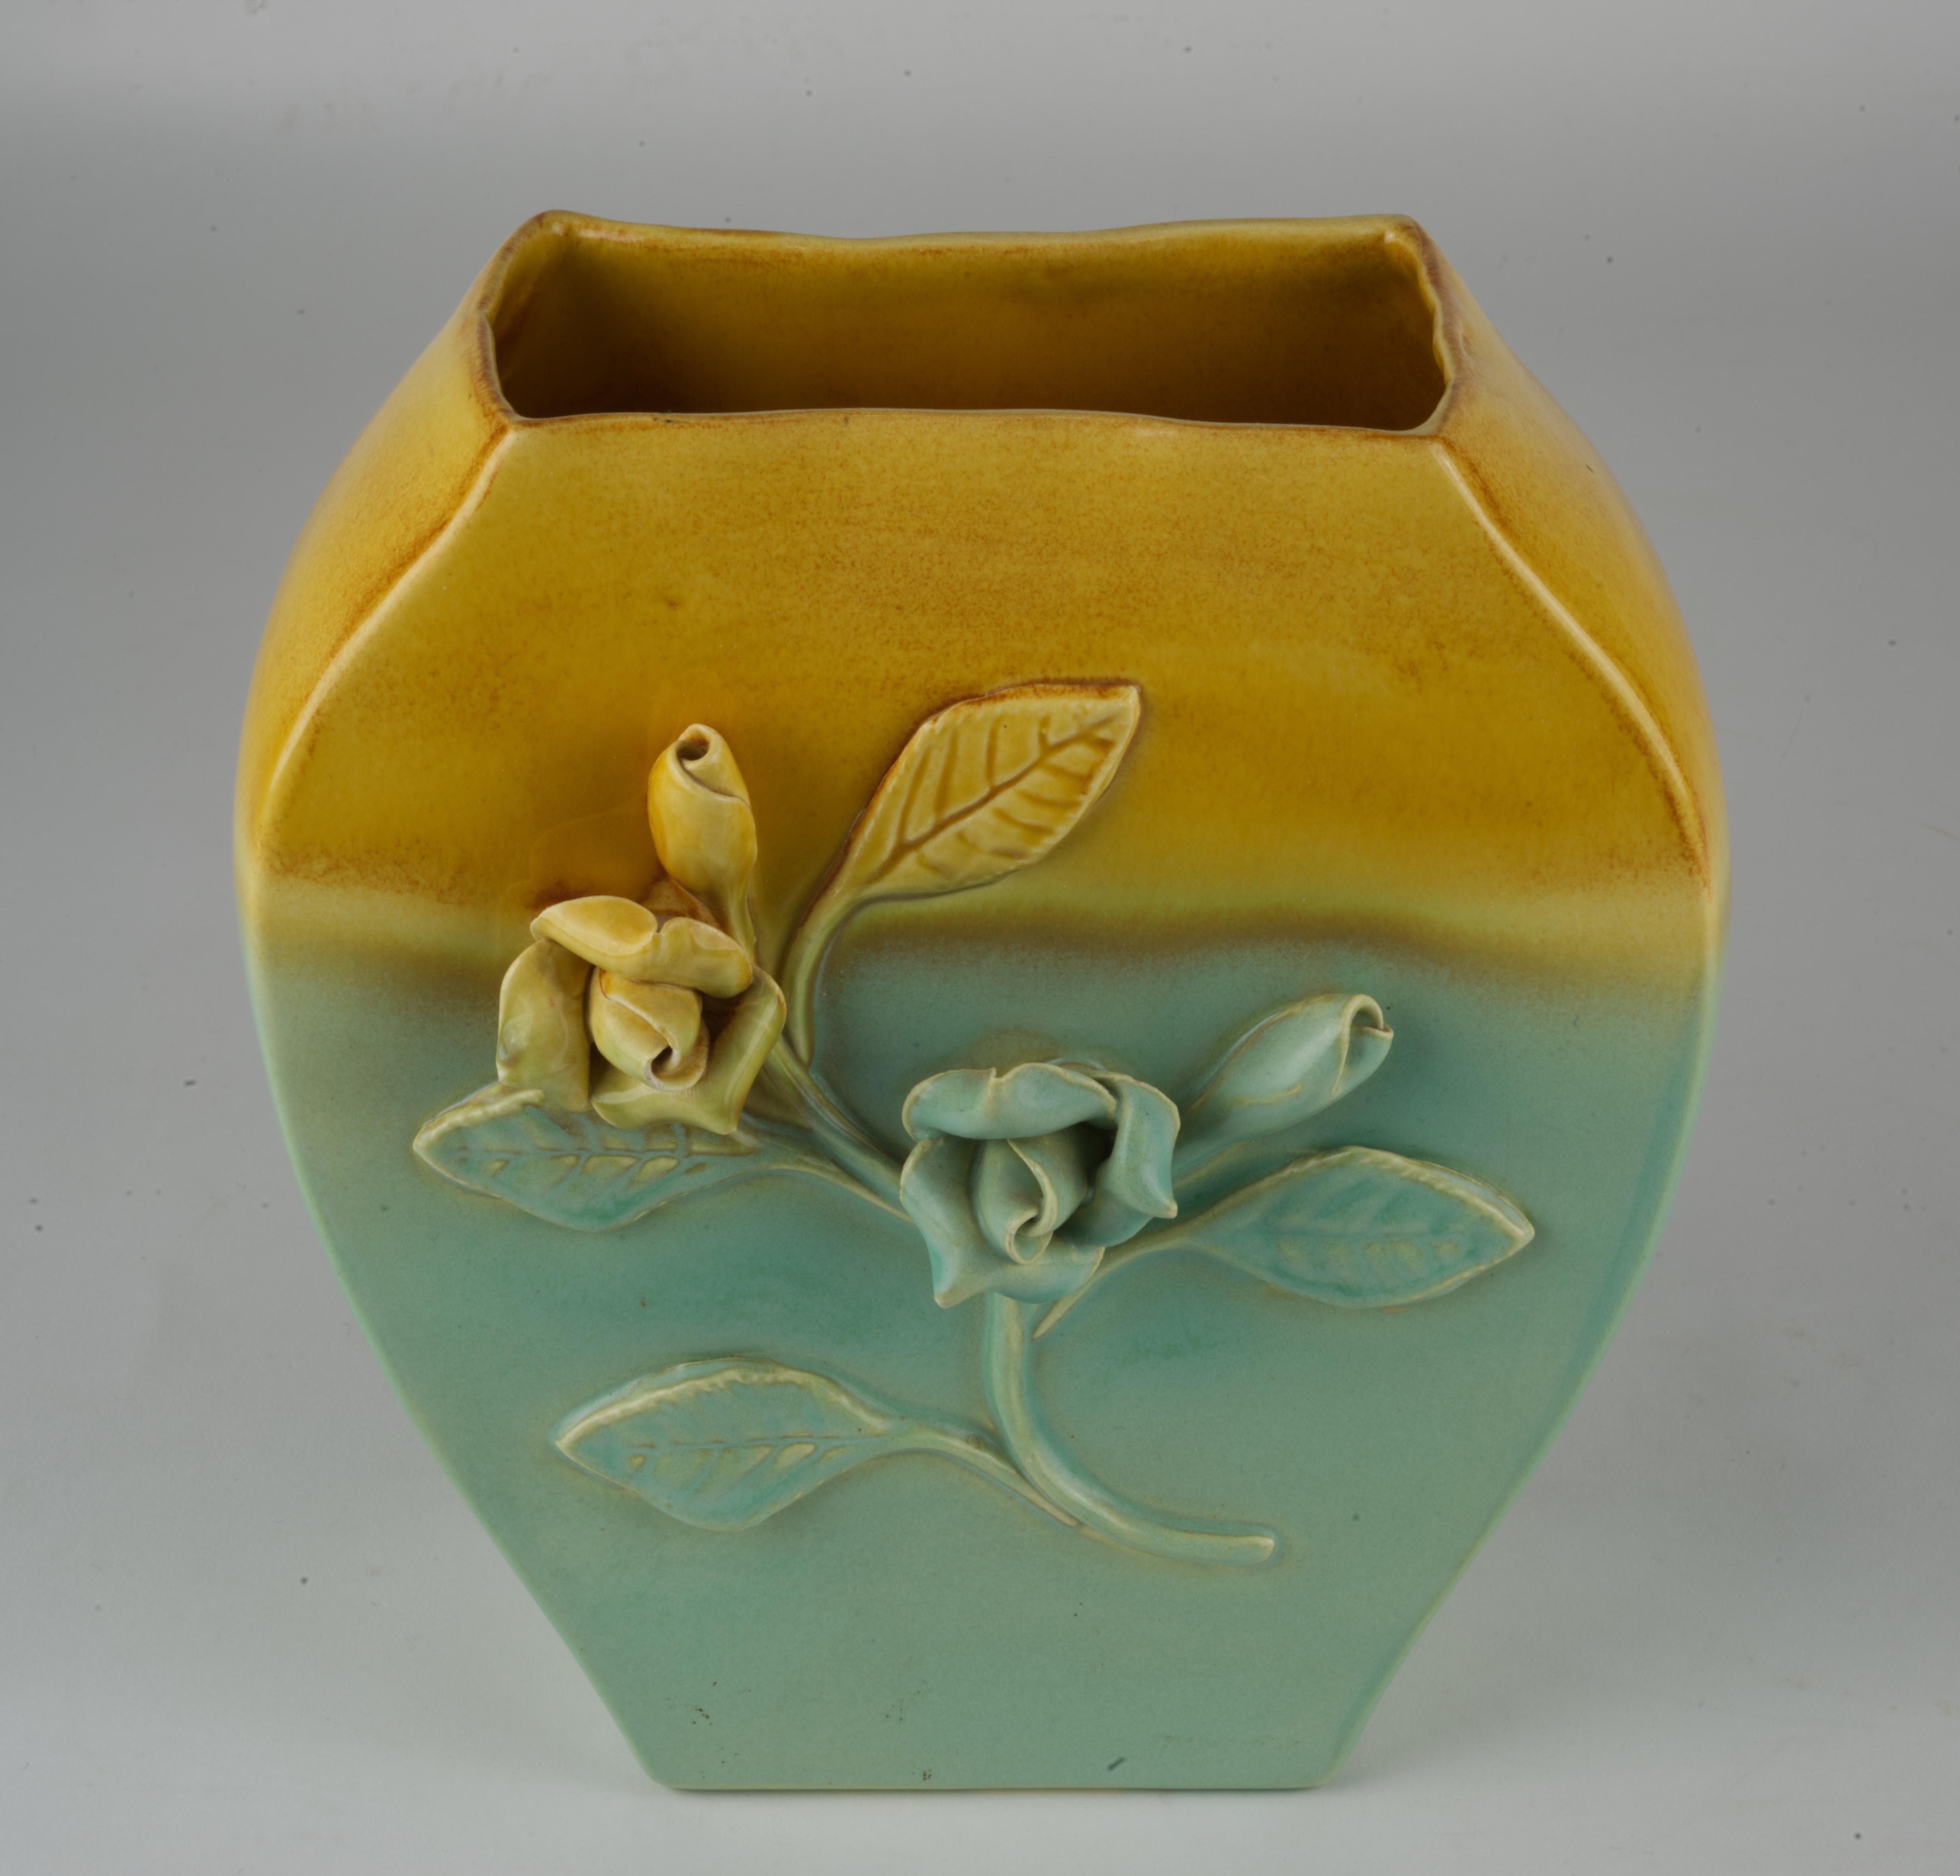  Ce vase vintage en poterie californienne est décoré de fleurs appliquées ; il est émaillé d'une combinaison de glaçure jaune brillante sur le dessus et de glaçure bleu clair semi-mate sur le reste du vase. Il est signé sur le fond avec un numéro de